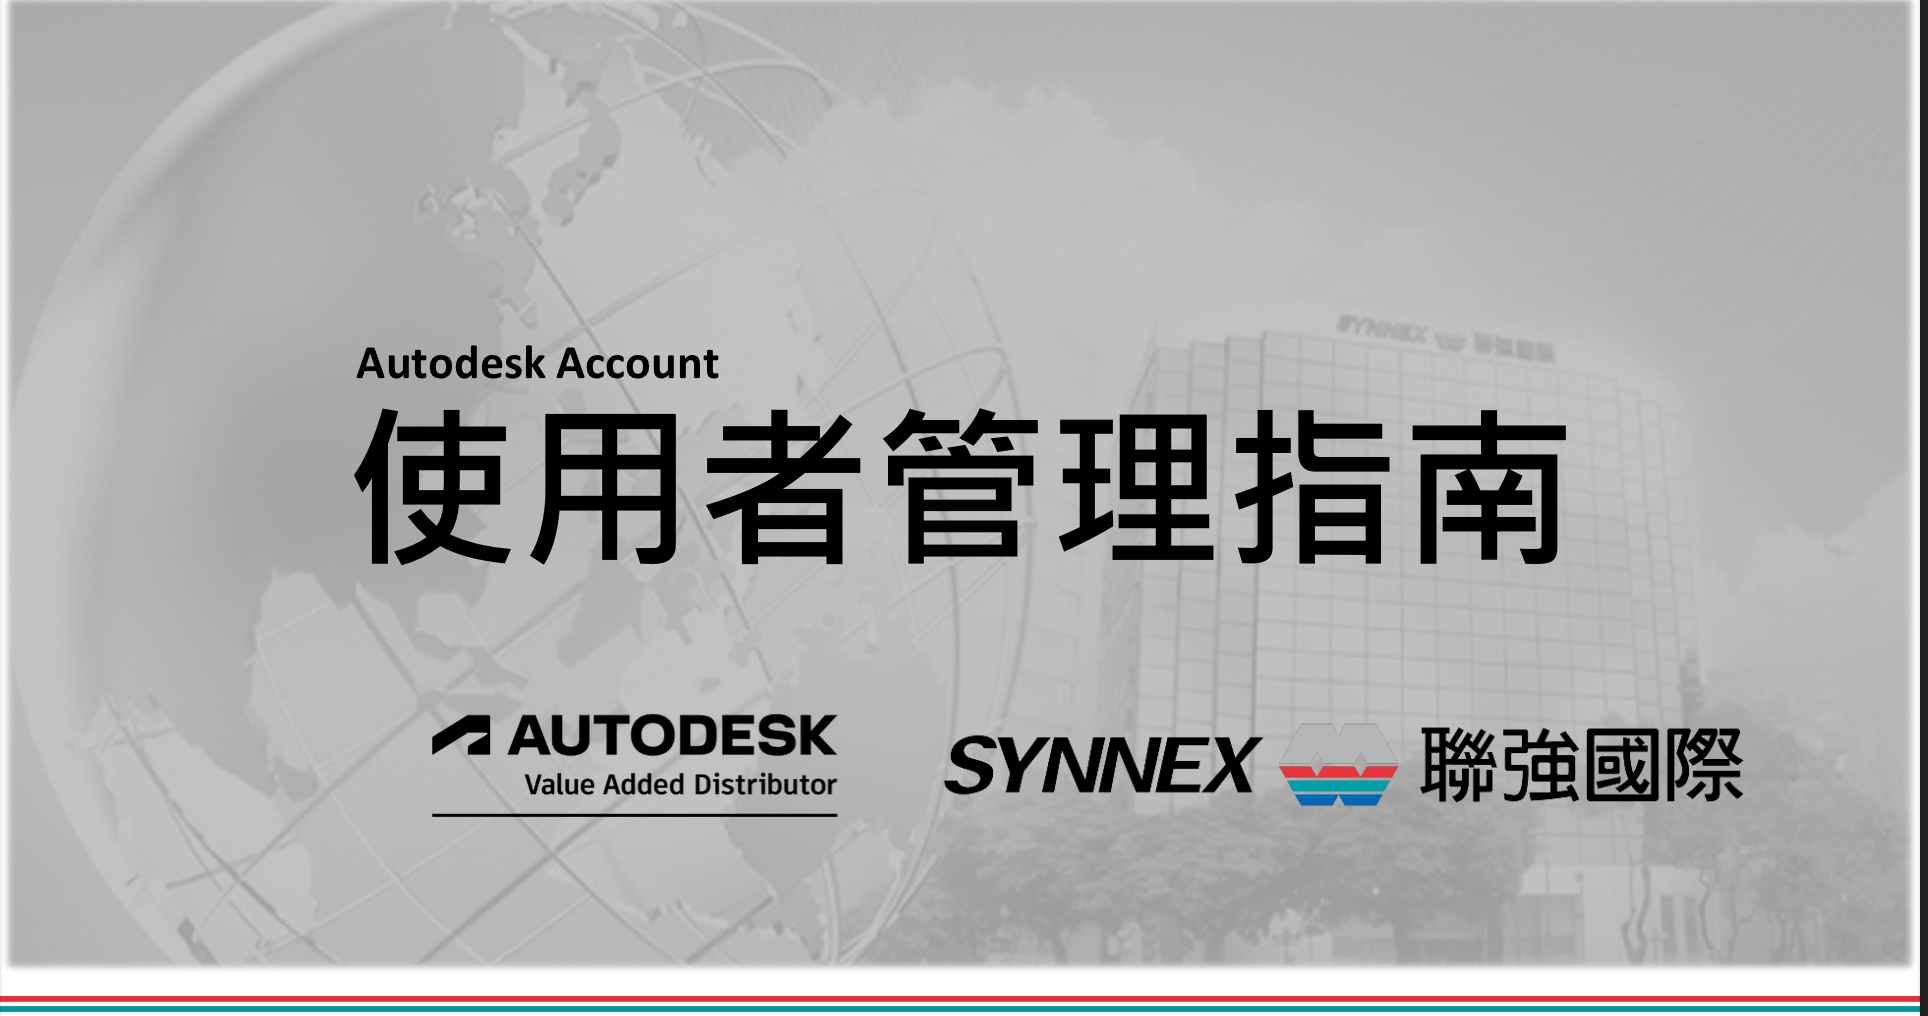 Autodesk Account 使用者管理指南_20210923